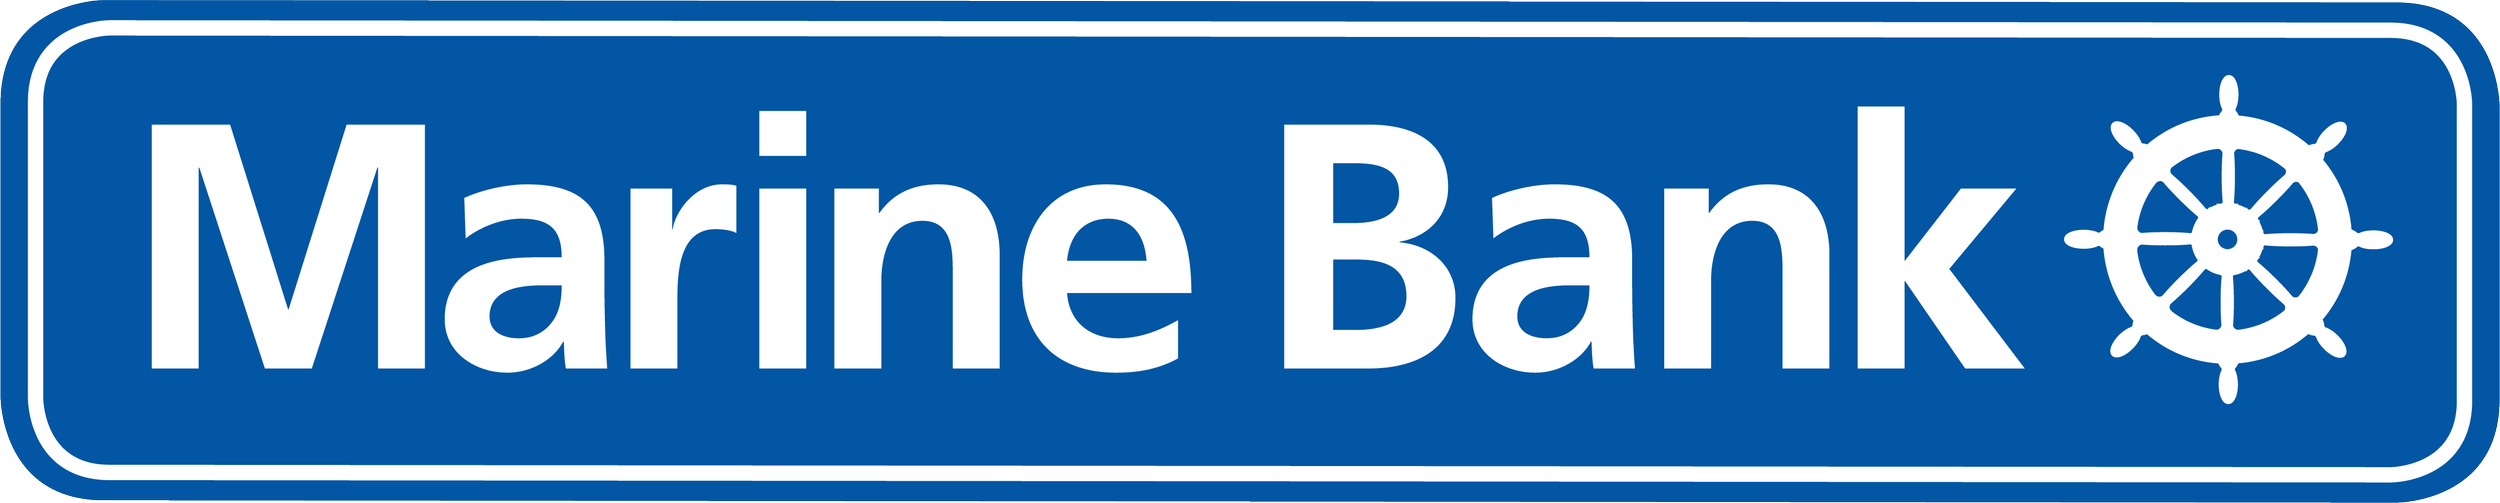 Marine Bank Logo.png